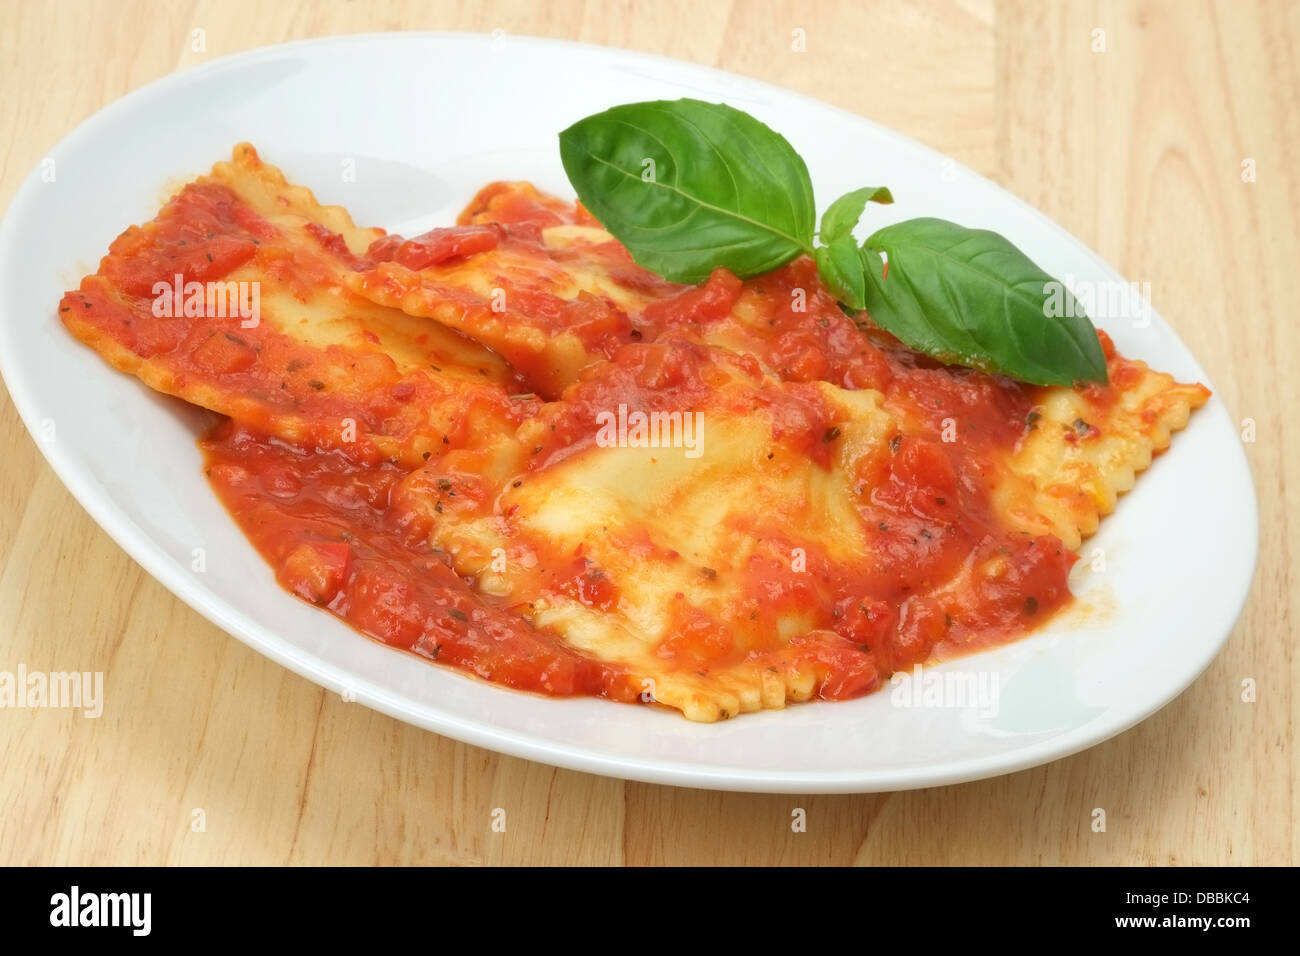 Ravioli rellenos de queso pasta en salsa de tomate rojo con una guarnición de hojas de albahaca. Foto de stock